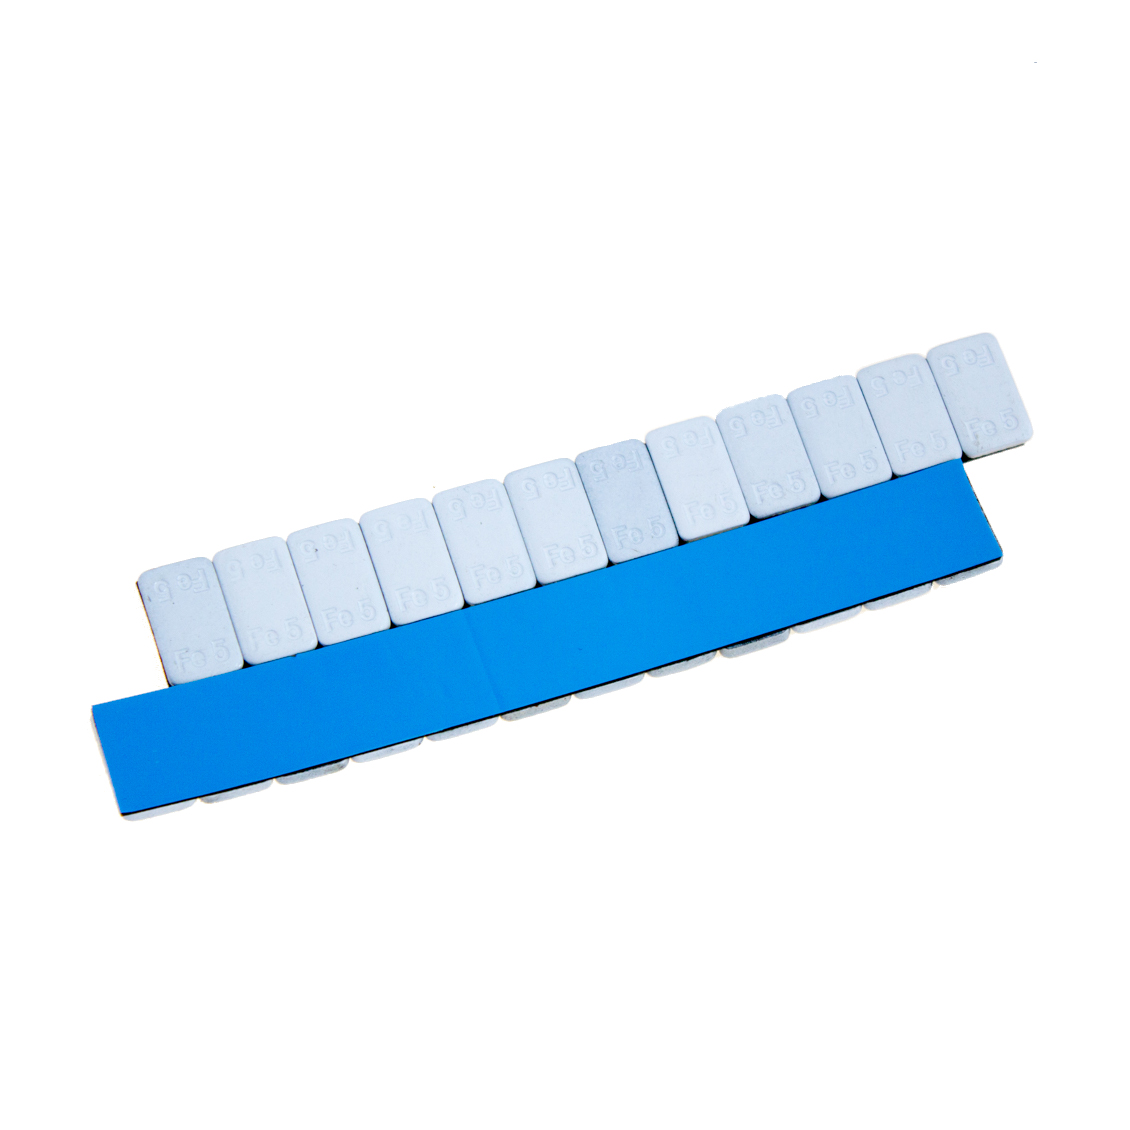 Груза адгезивные FE-071W 12×5 гр (Синий скотч) (Белая эмаль) (100 шт.)